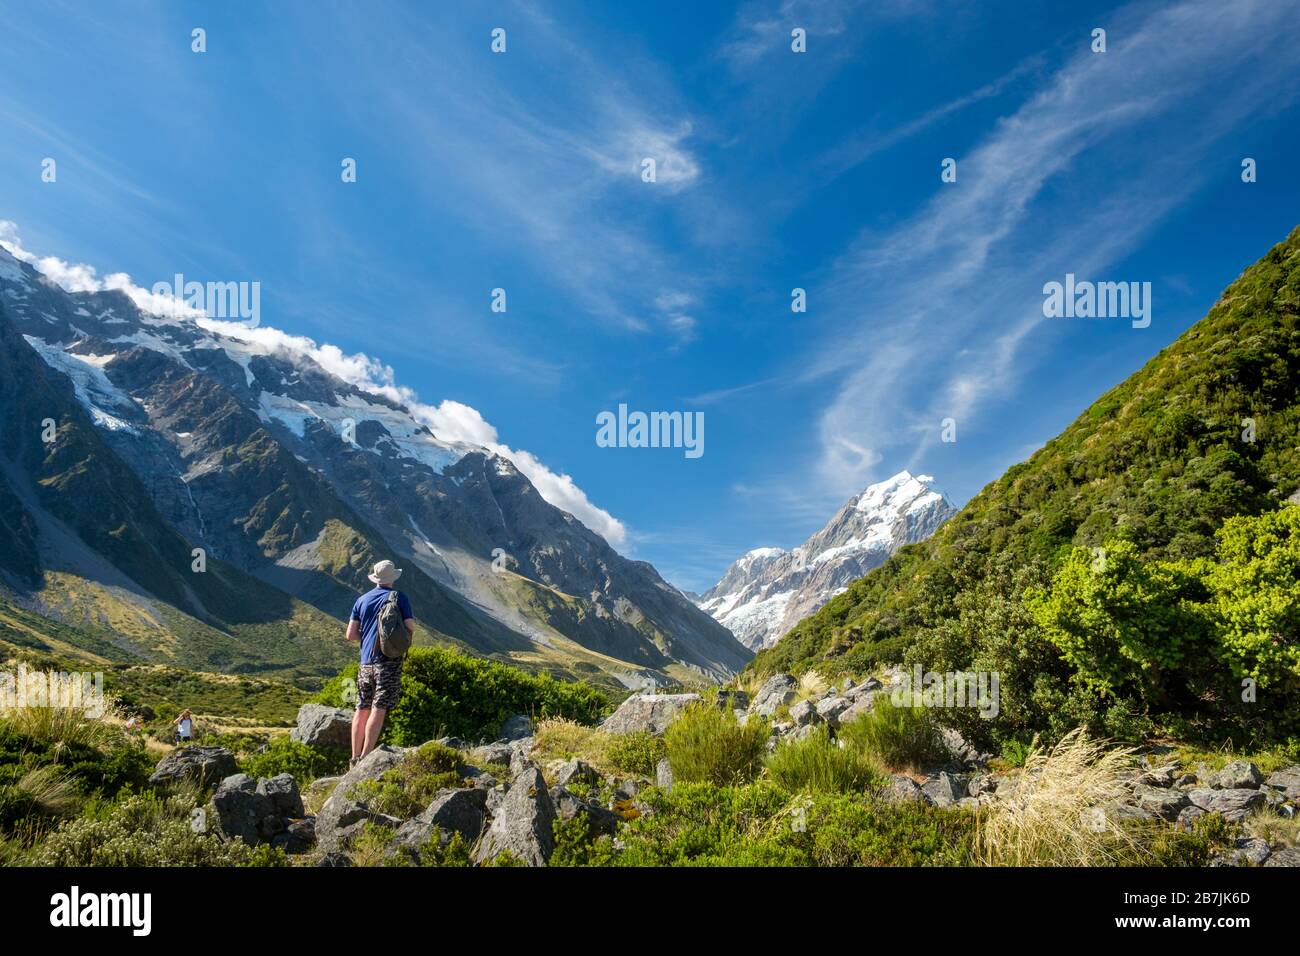 Homme sur la colline de Grassy avec Glaciers et montagne enneigée, Aoraki/Parc national du Mont Cook, Île du Sud, Nouvelle-Zélande Banque D'Images